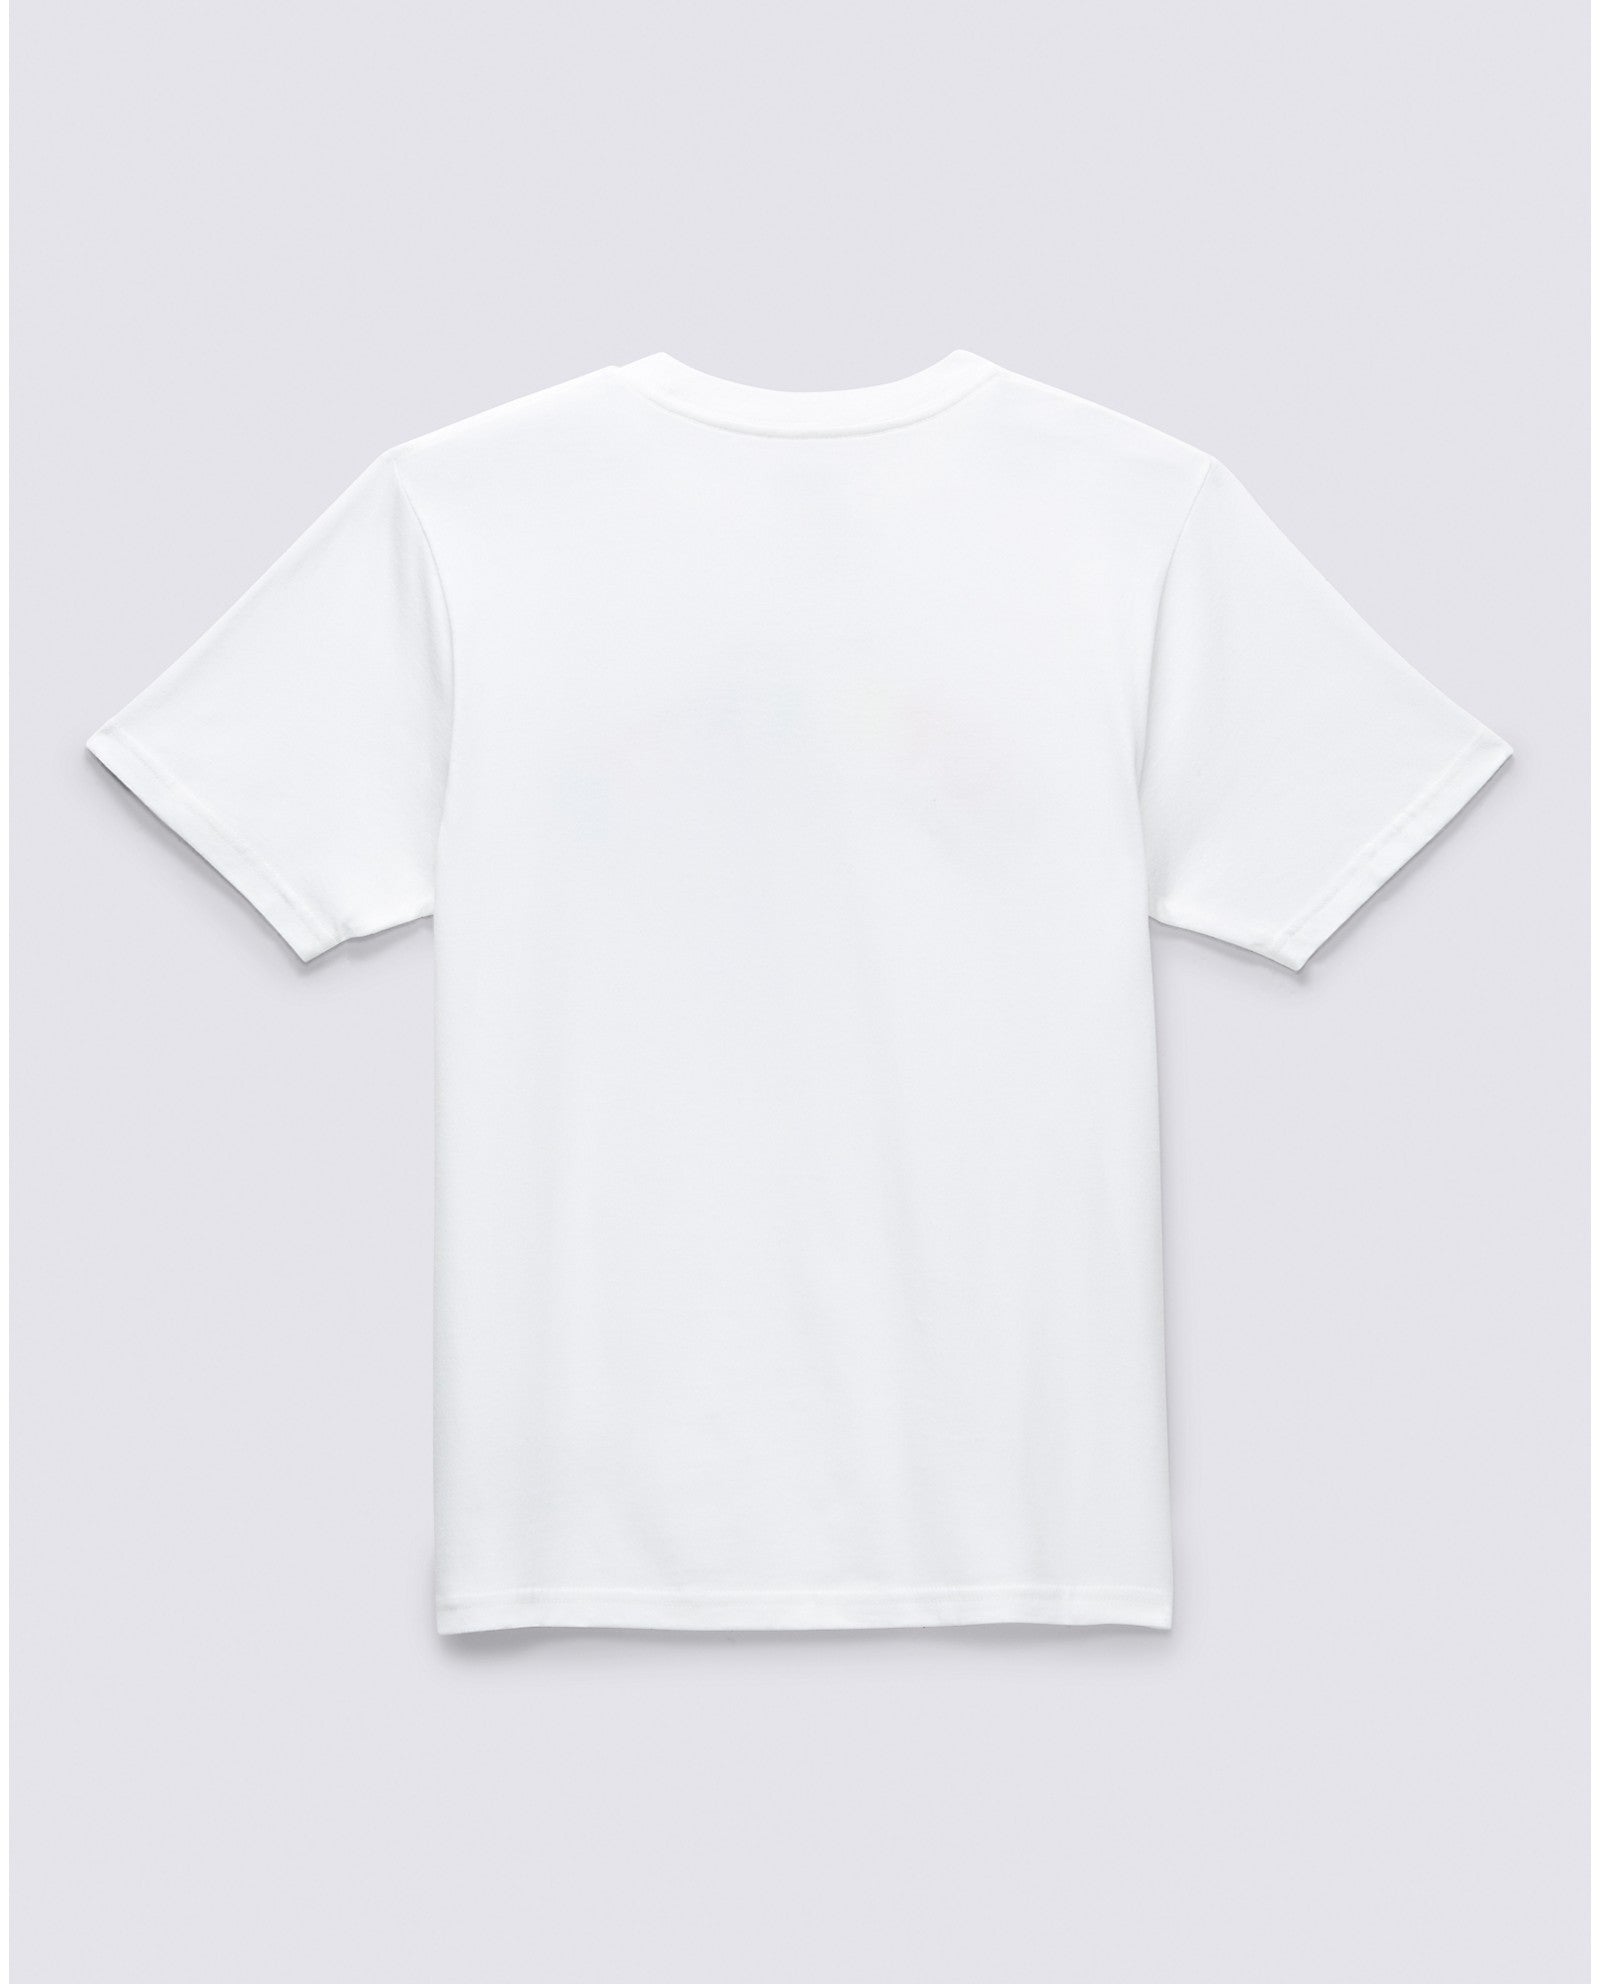 Vans Kids Pride T-Shirt White VN00080JWHT